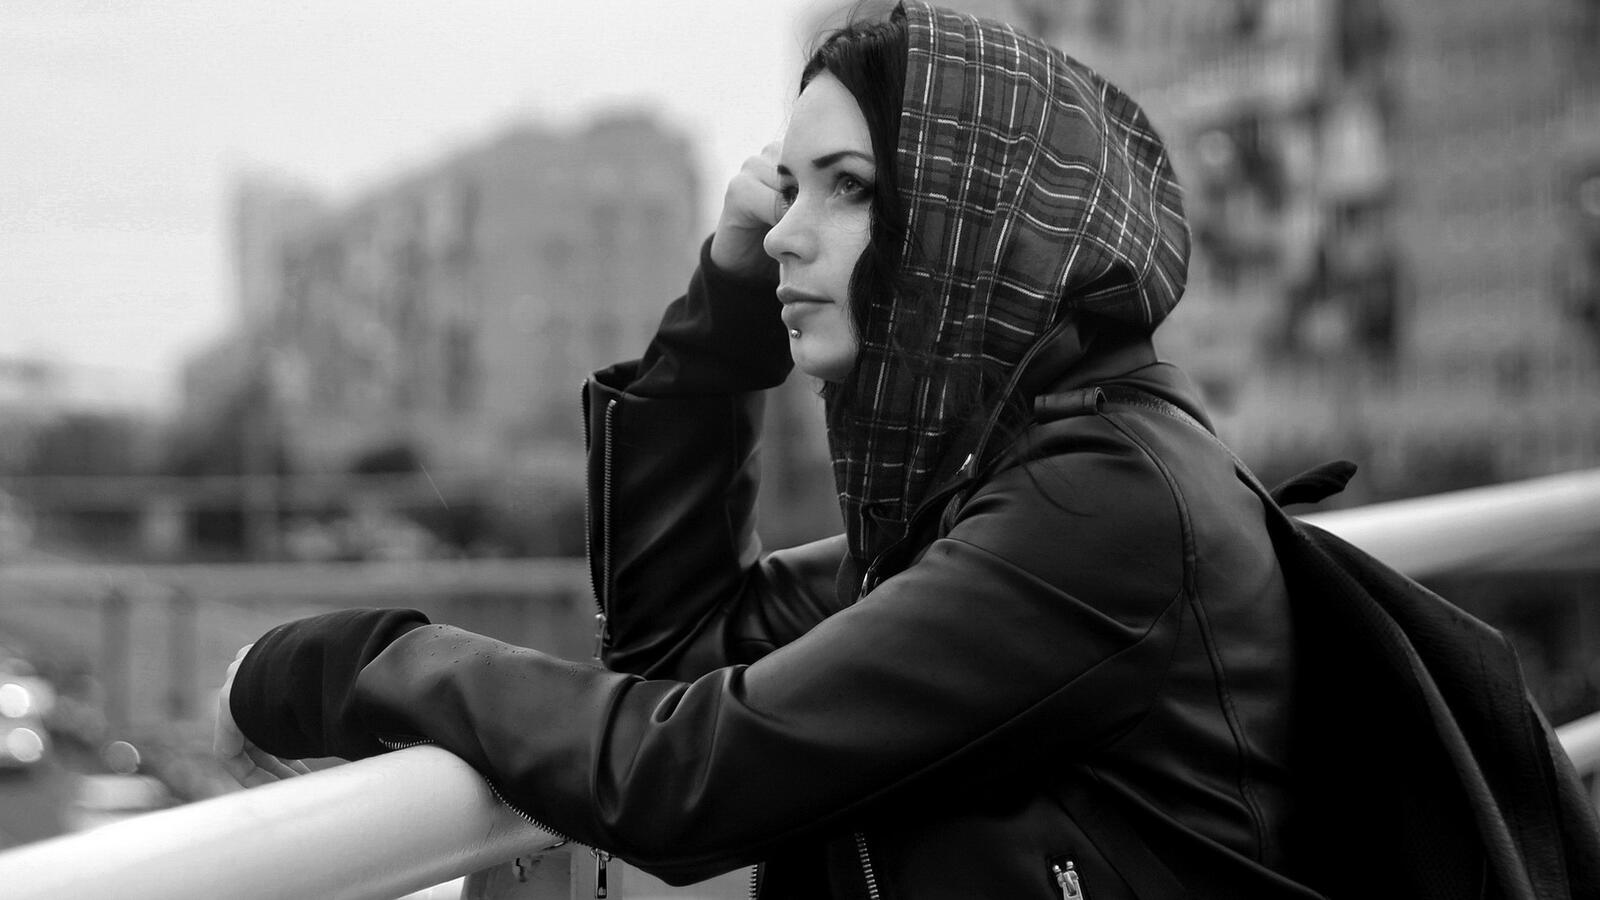 Бесплатное фото Катерина Баумгертнер в городе под дождем черно-белое фото